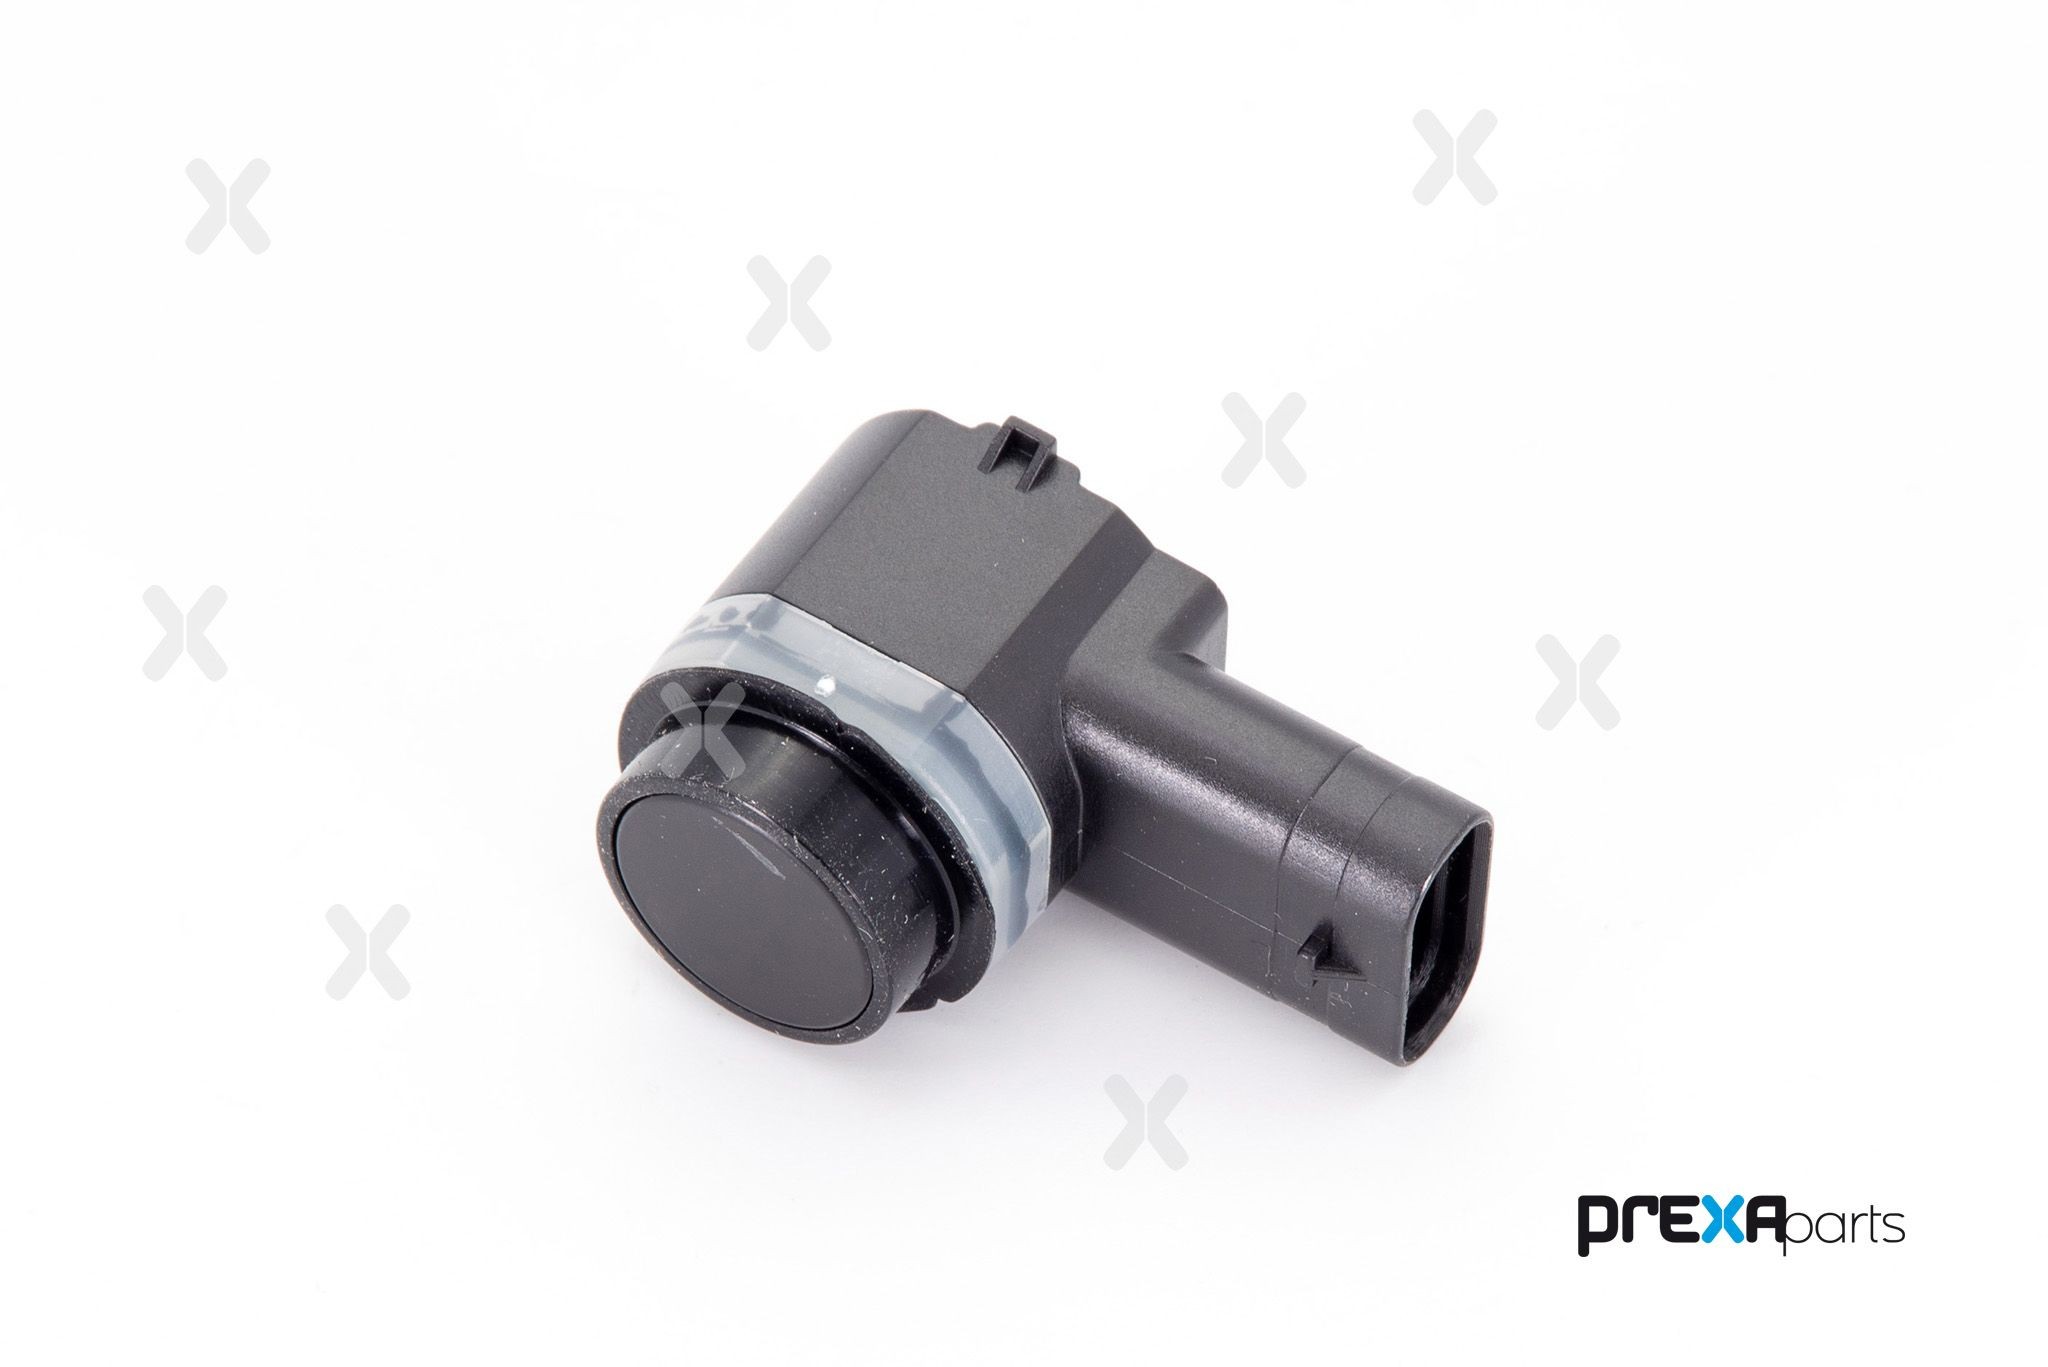 PREXAparts P503001 Parking sensor CJ5T15K-859EA